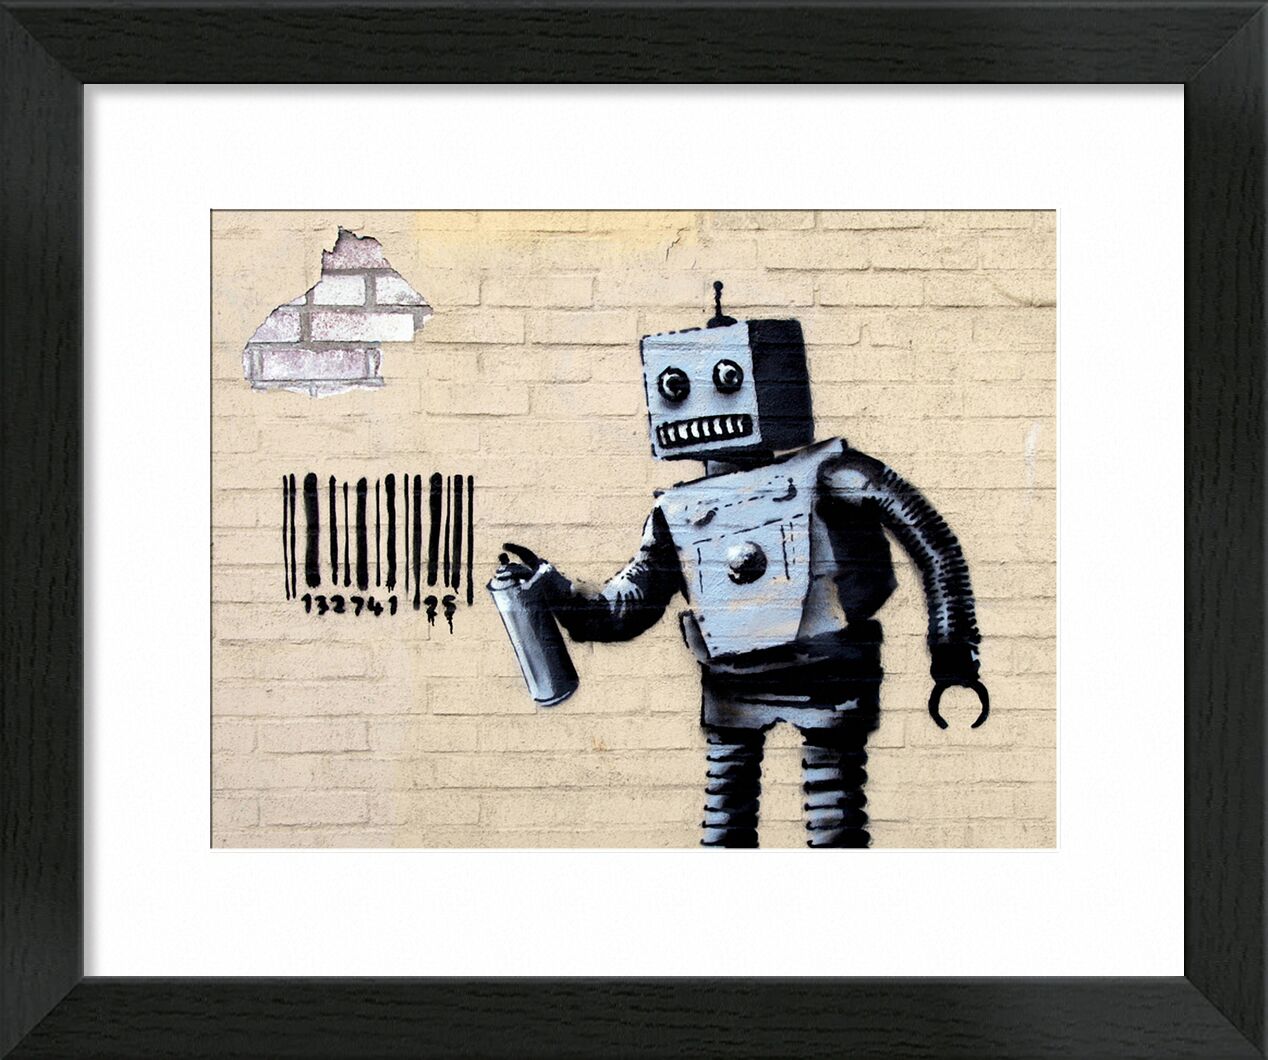 Robot - BANKSY desde Bellas artes, Prodi Art, código de barras, arte callejero, robot, Banksy